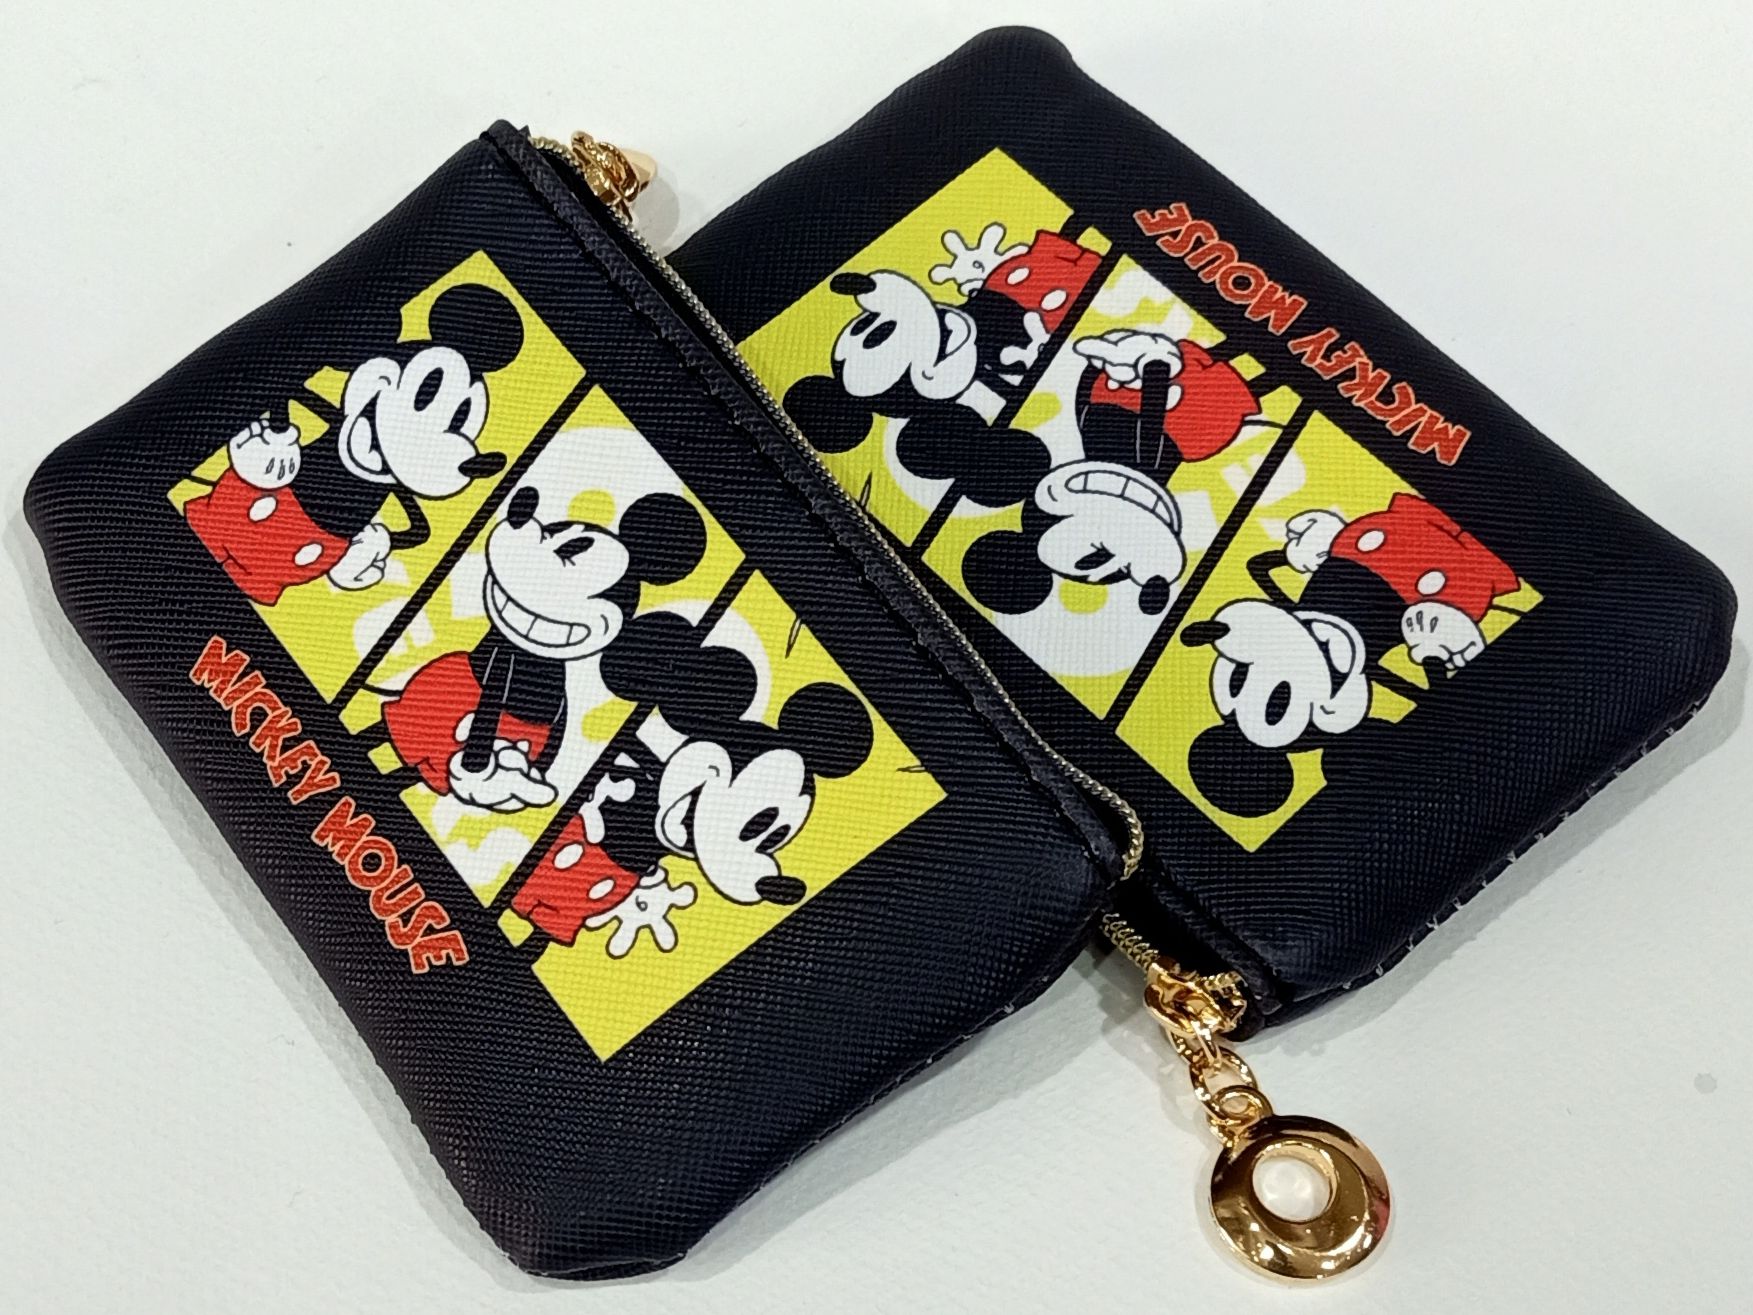 กระเป๋าสตางค์ กระเป๋าใส่เหรียญ ขนาดกว้าง 7.5cm ยาว 11.5 cm กระเป๋าใส่บัตร กระเป๋าเอนกประสงค์  Mickey Mouse สวยน่ารัก น่าใช้